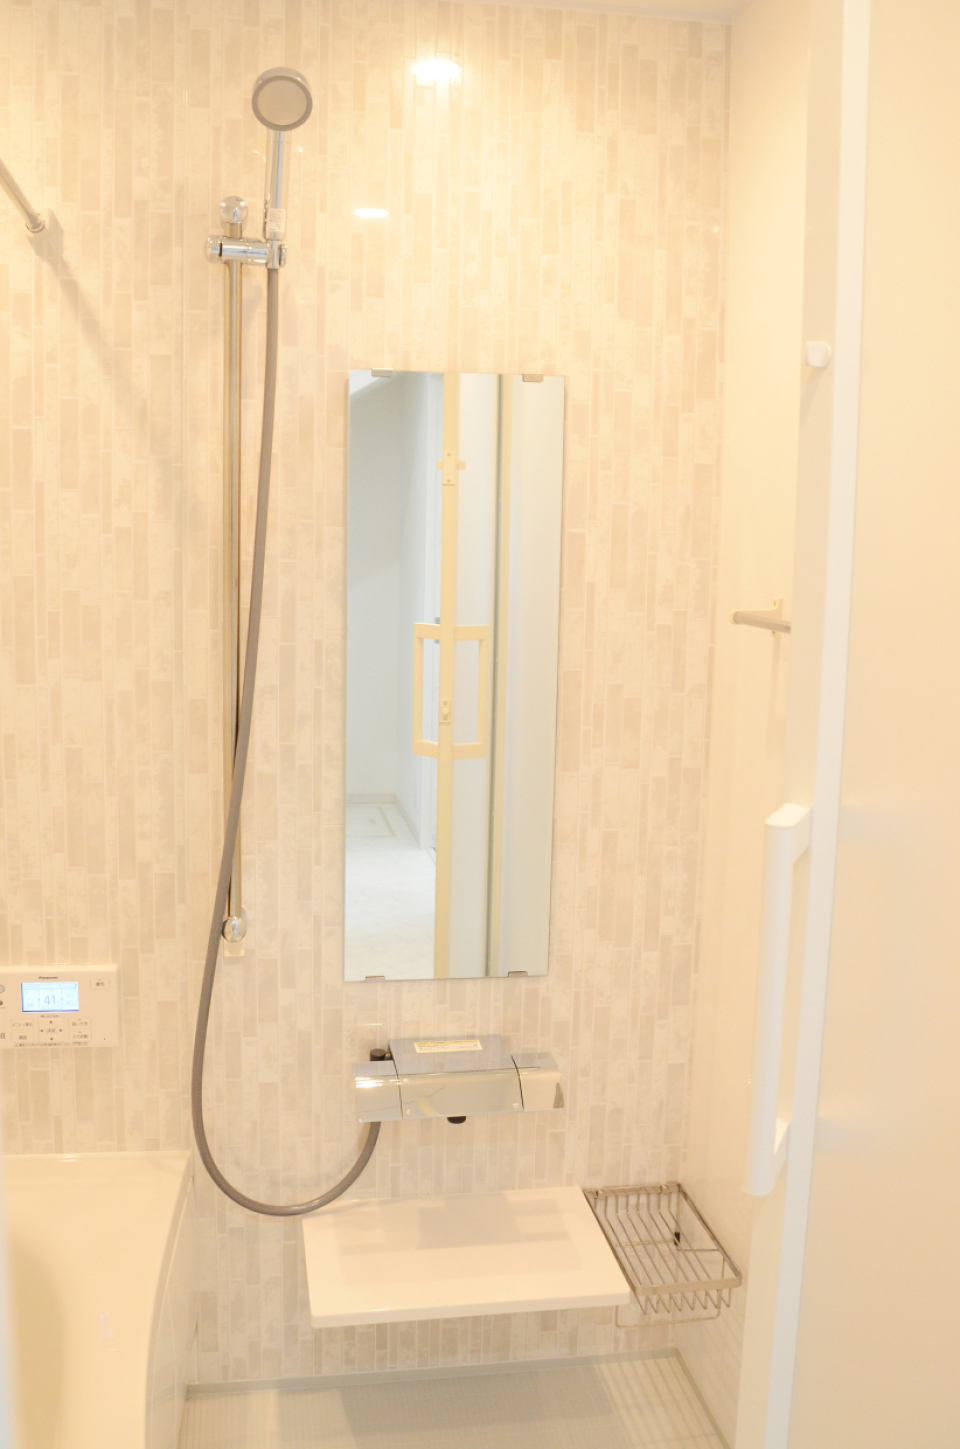 シャワーや水栓は最新式でモダンなホテルのよう。